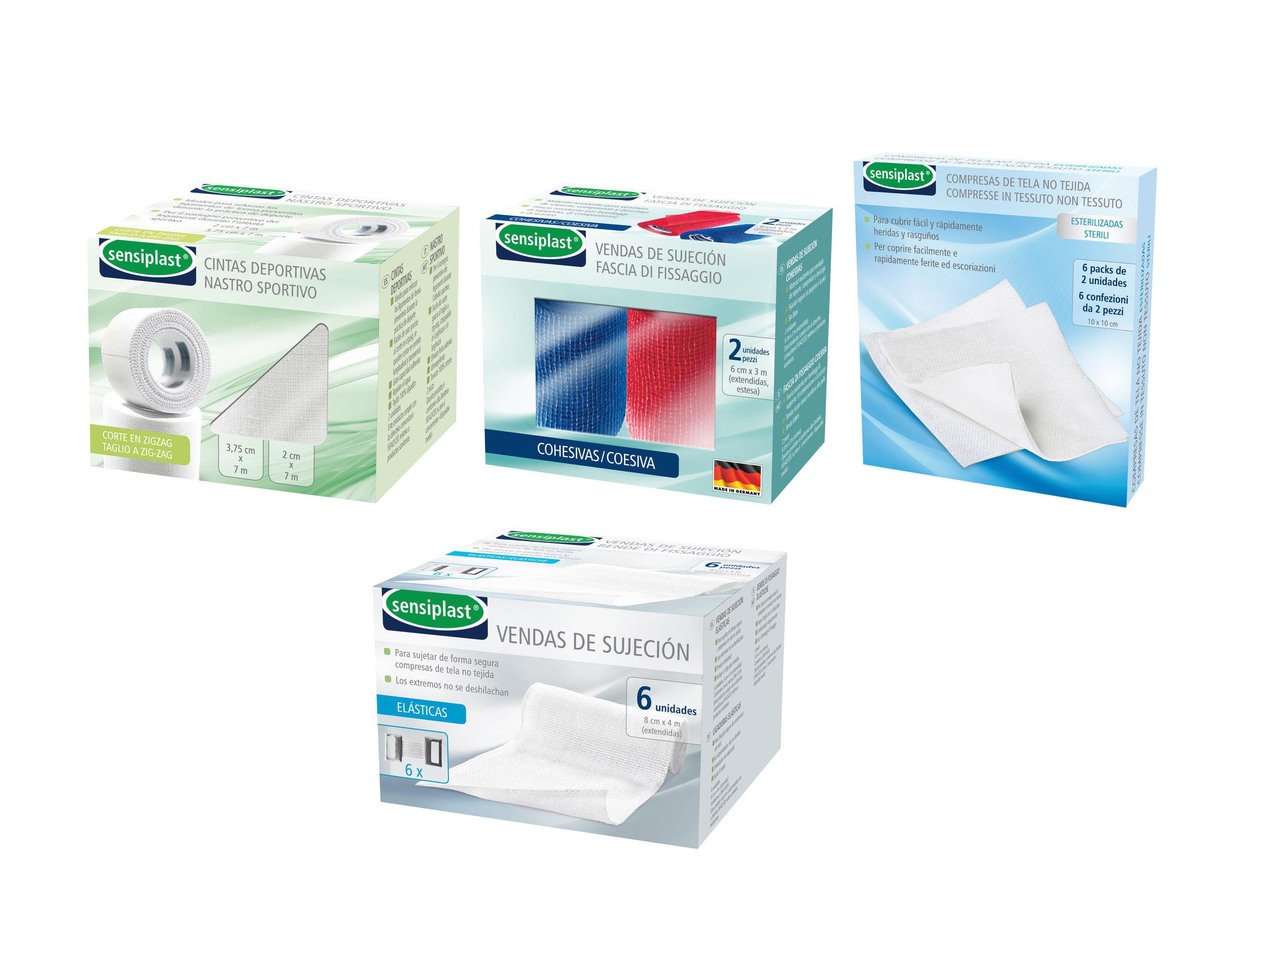 Bandages or Sterile Gauzes for Medication